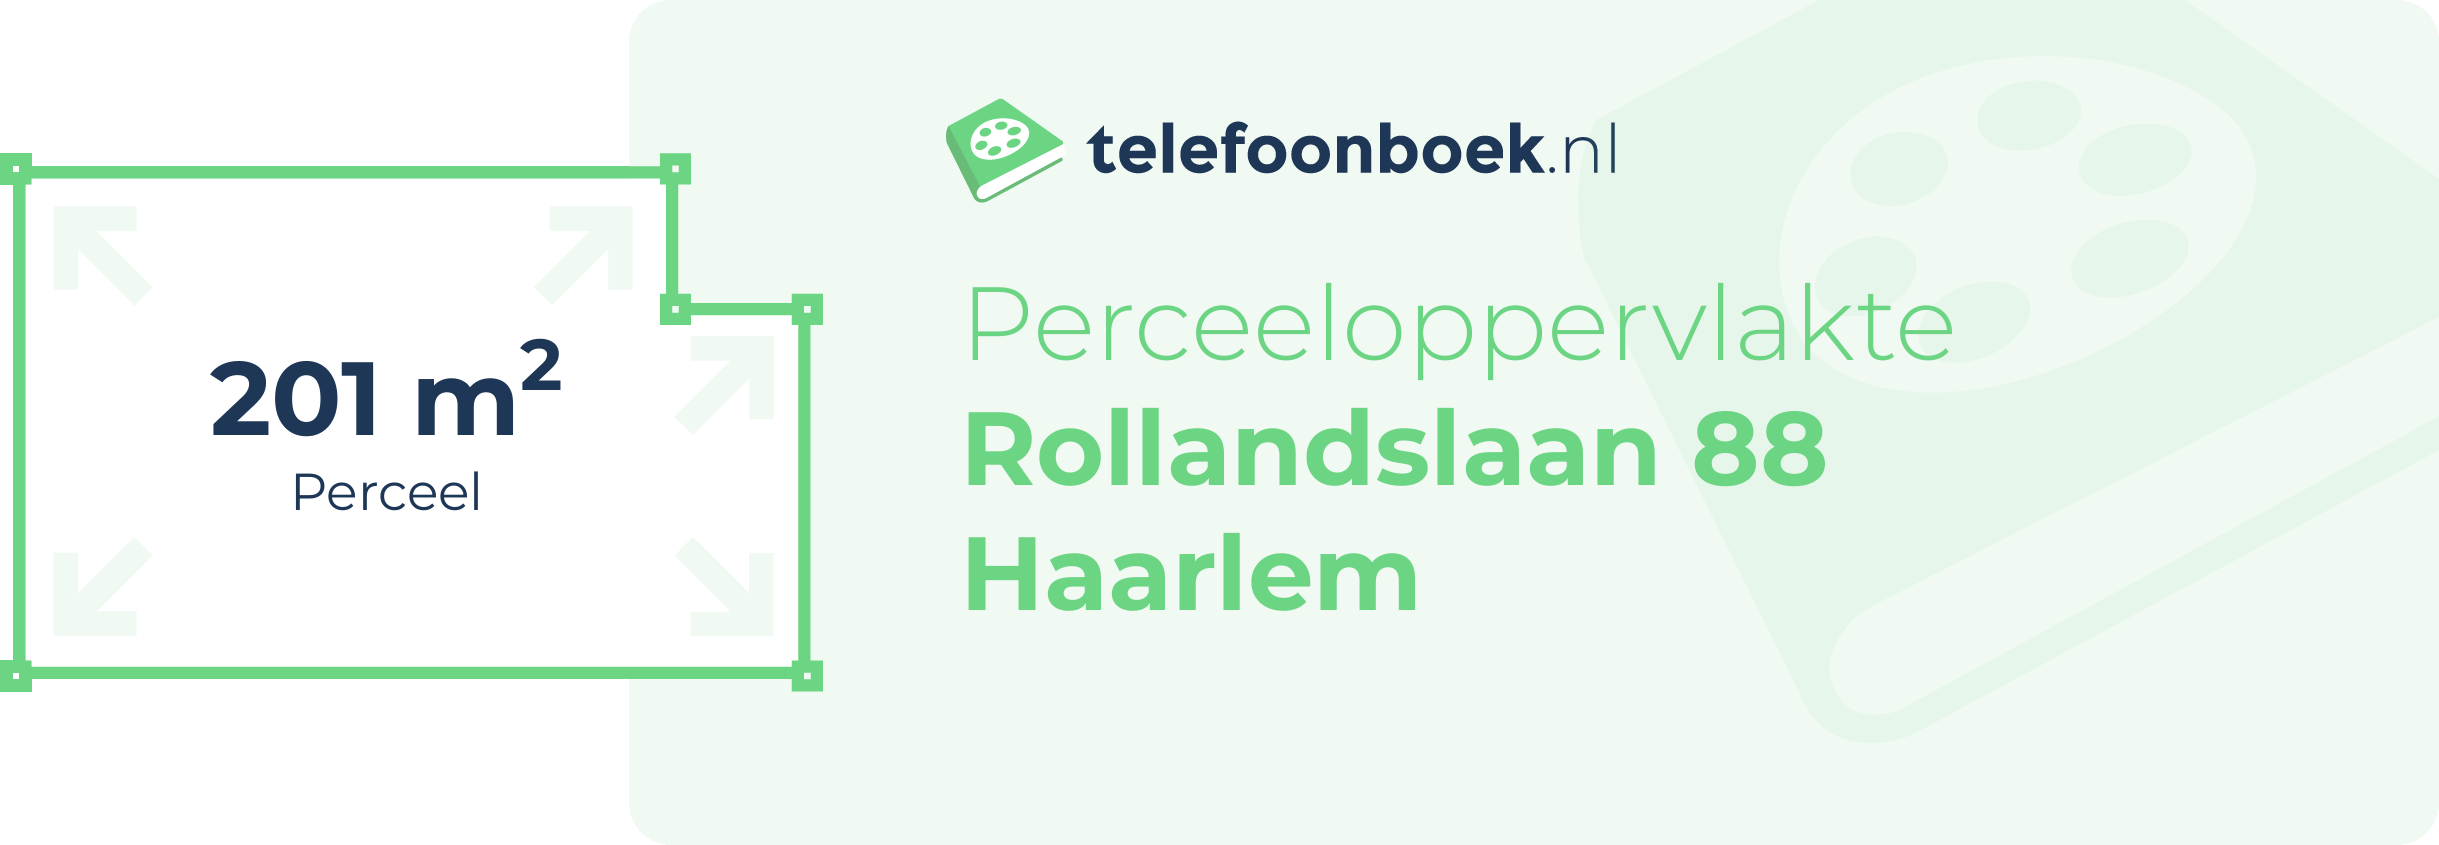 Perceeloppervlakte Rollandslaan 88 Haarlem